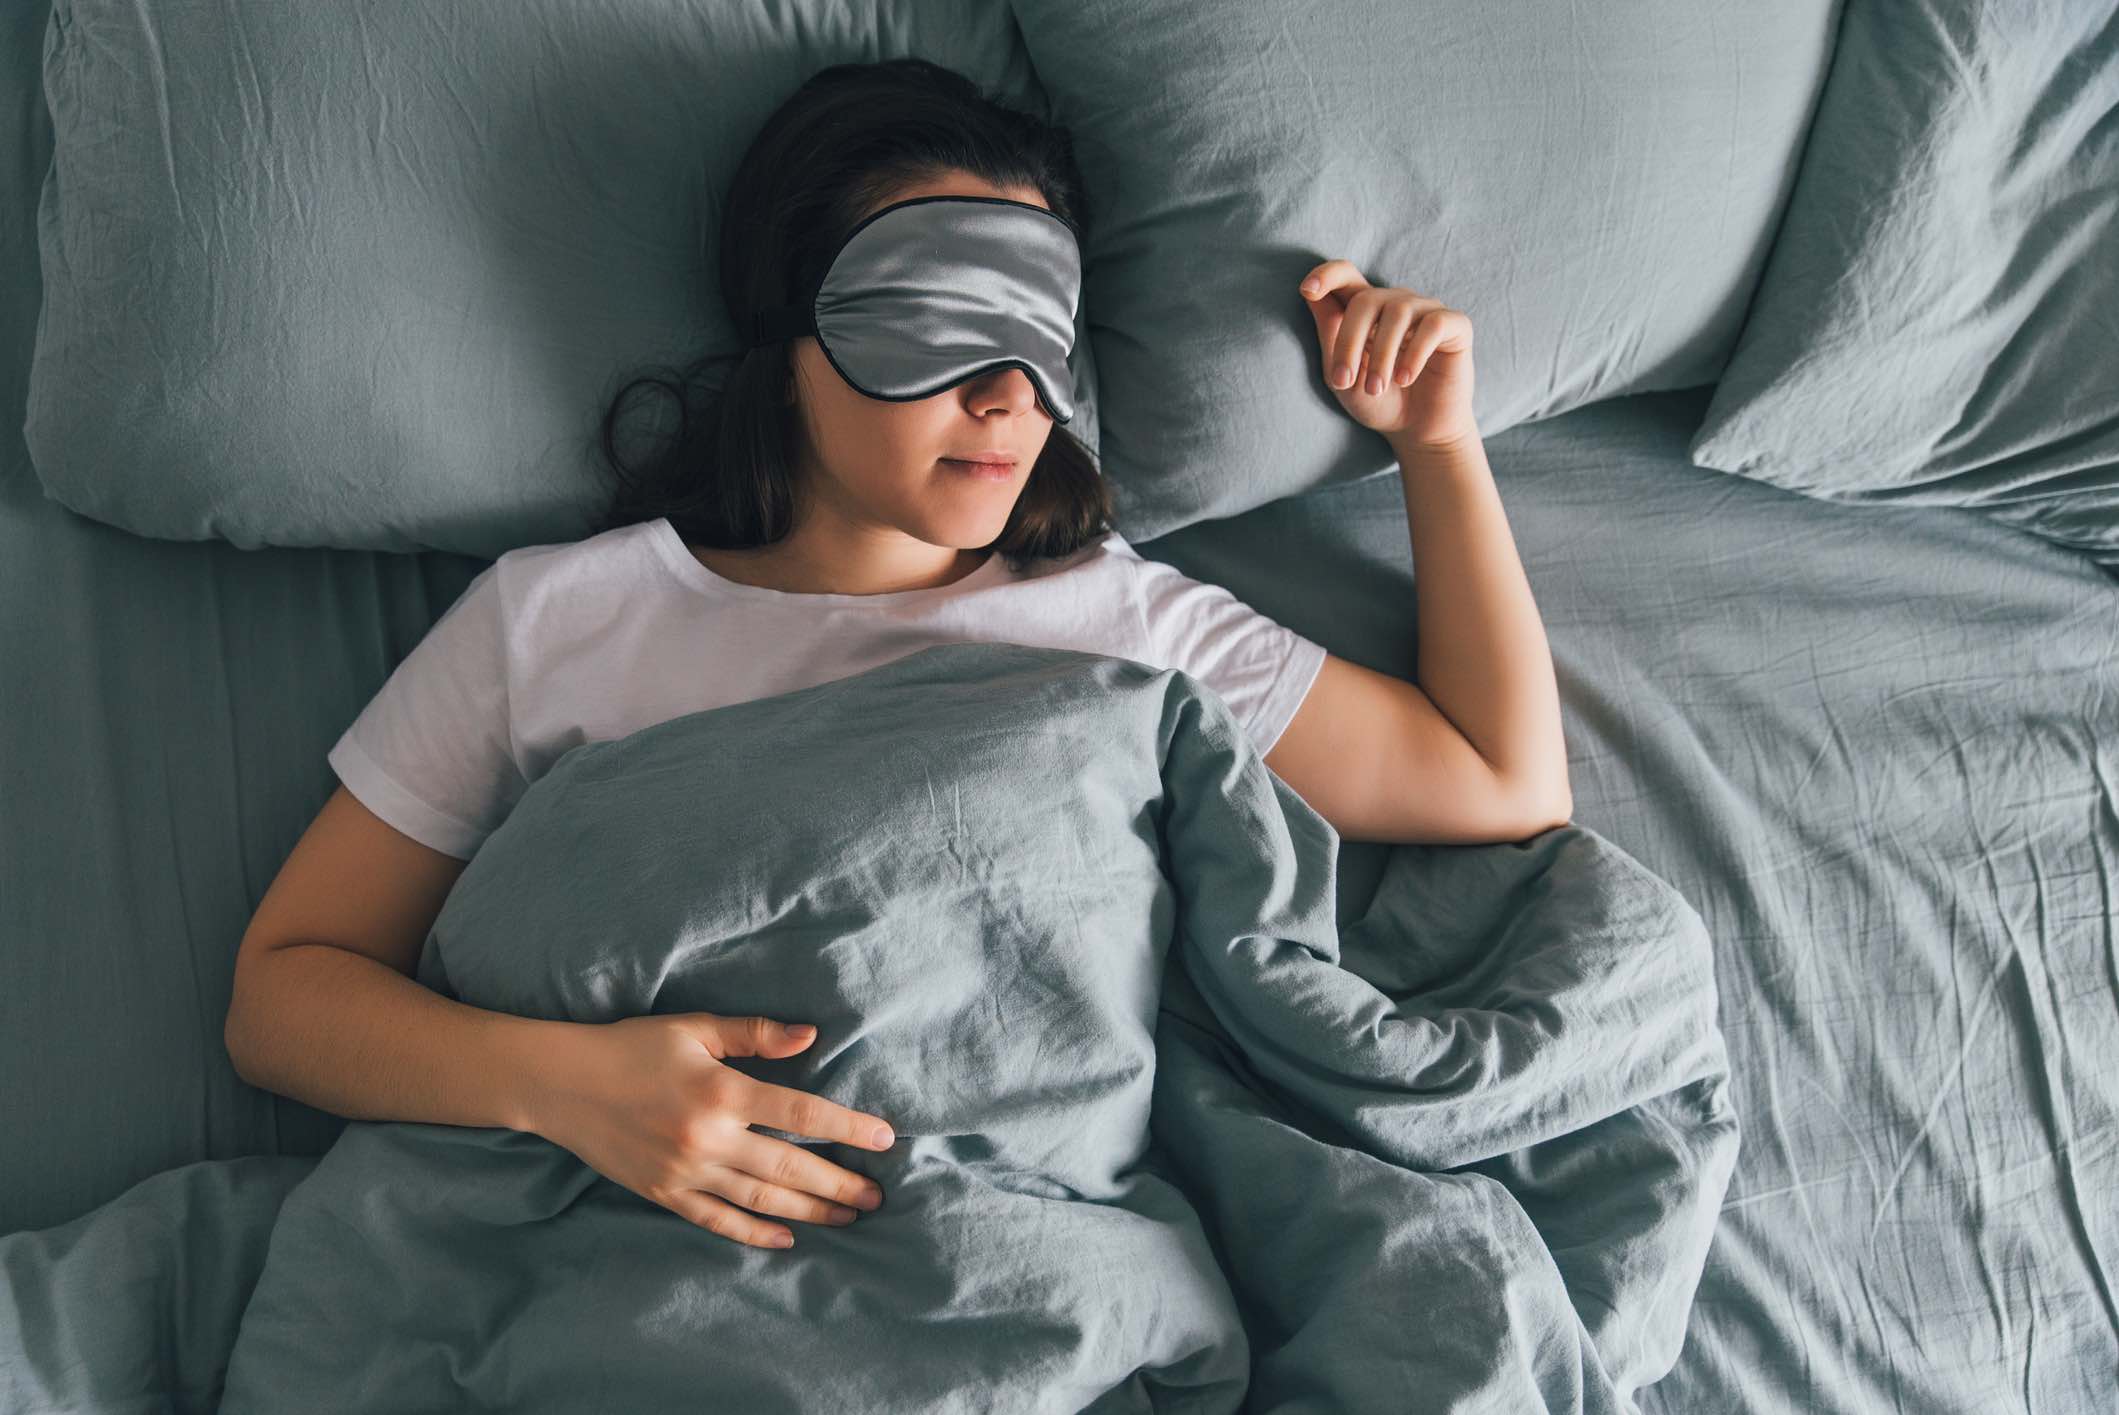 जिन महिलाओं को सोने में परेशानी होती है उनके लिए पांच टिप्स Tips